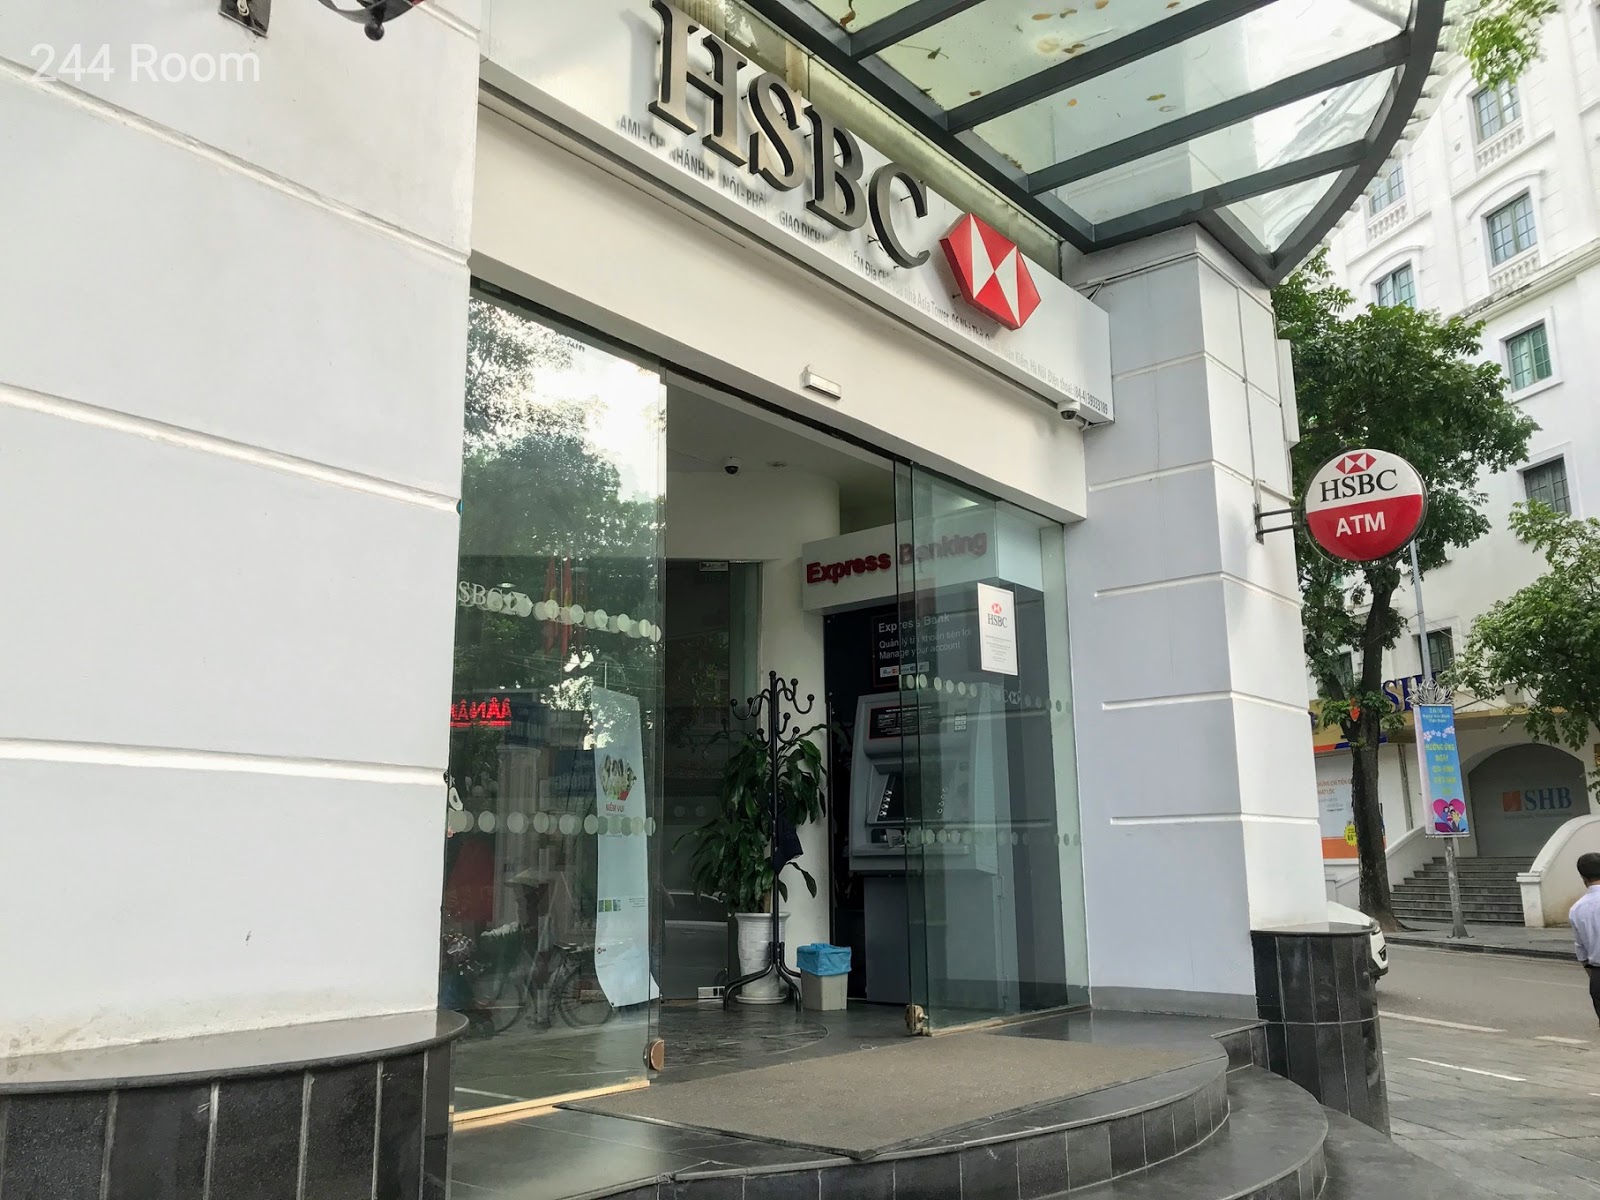 HSBC VN ATM